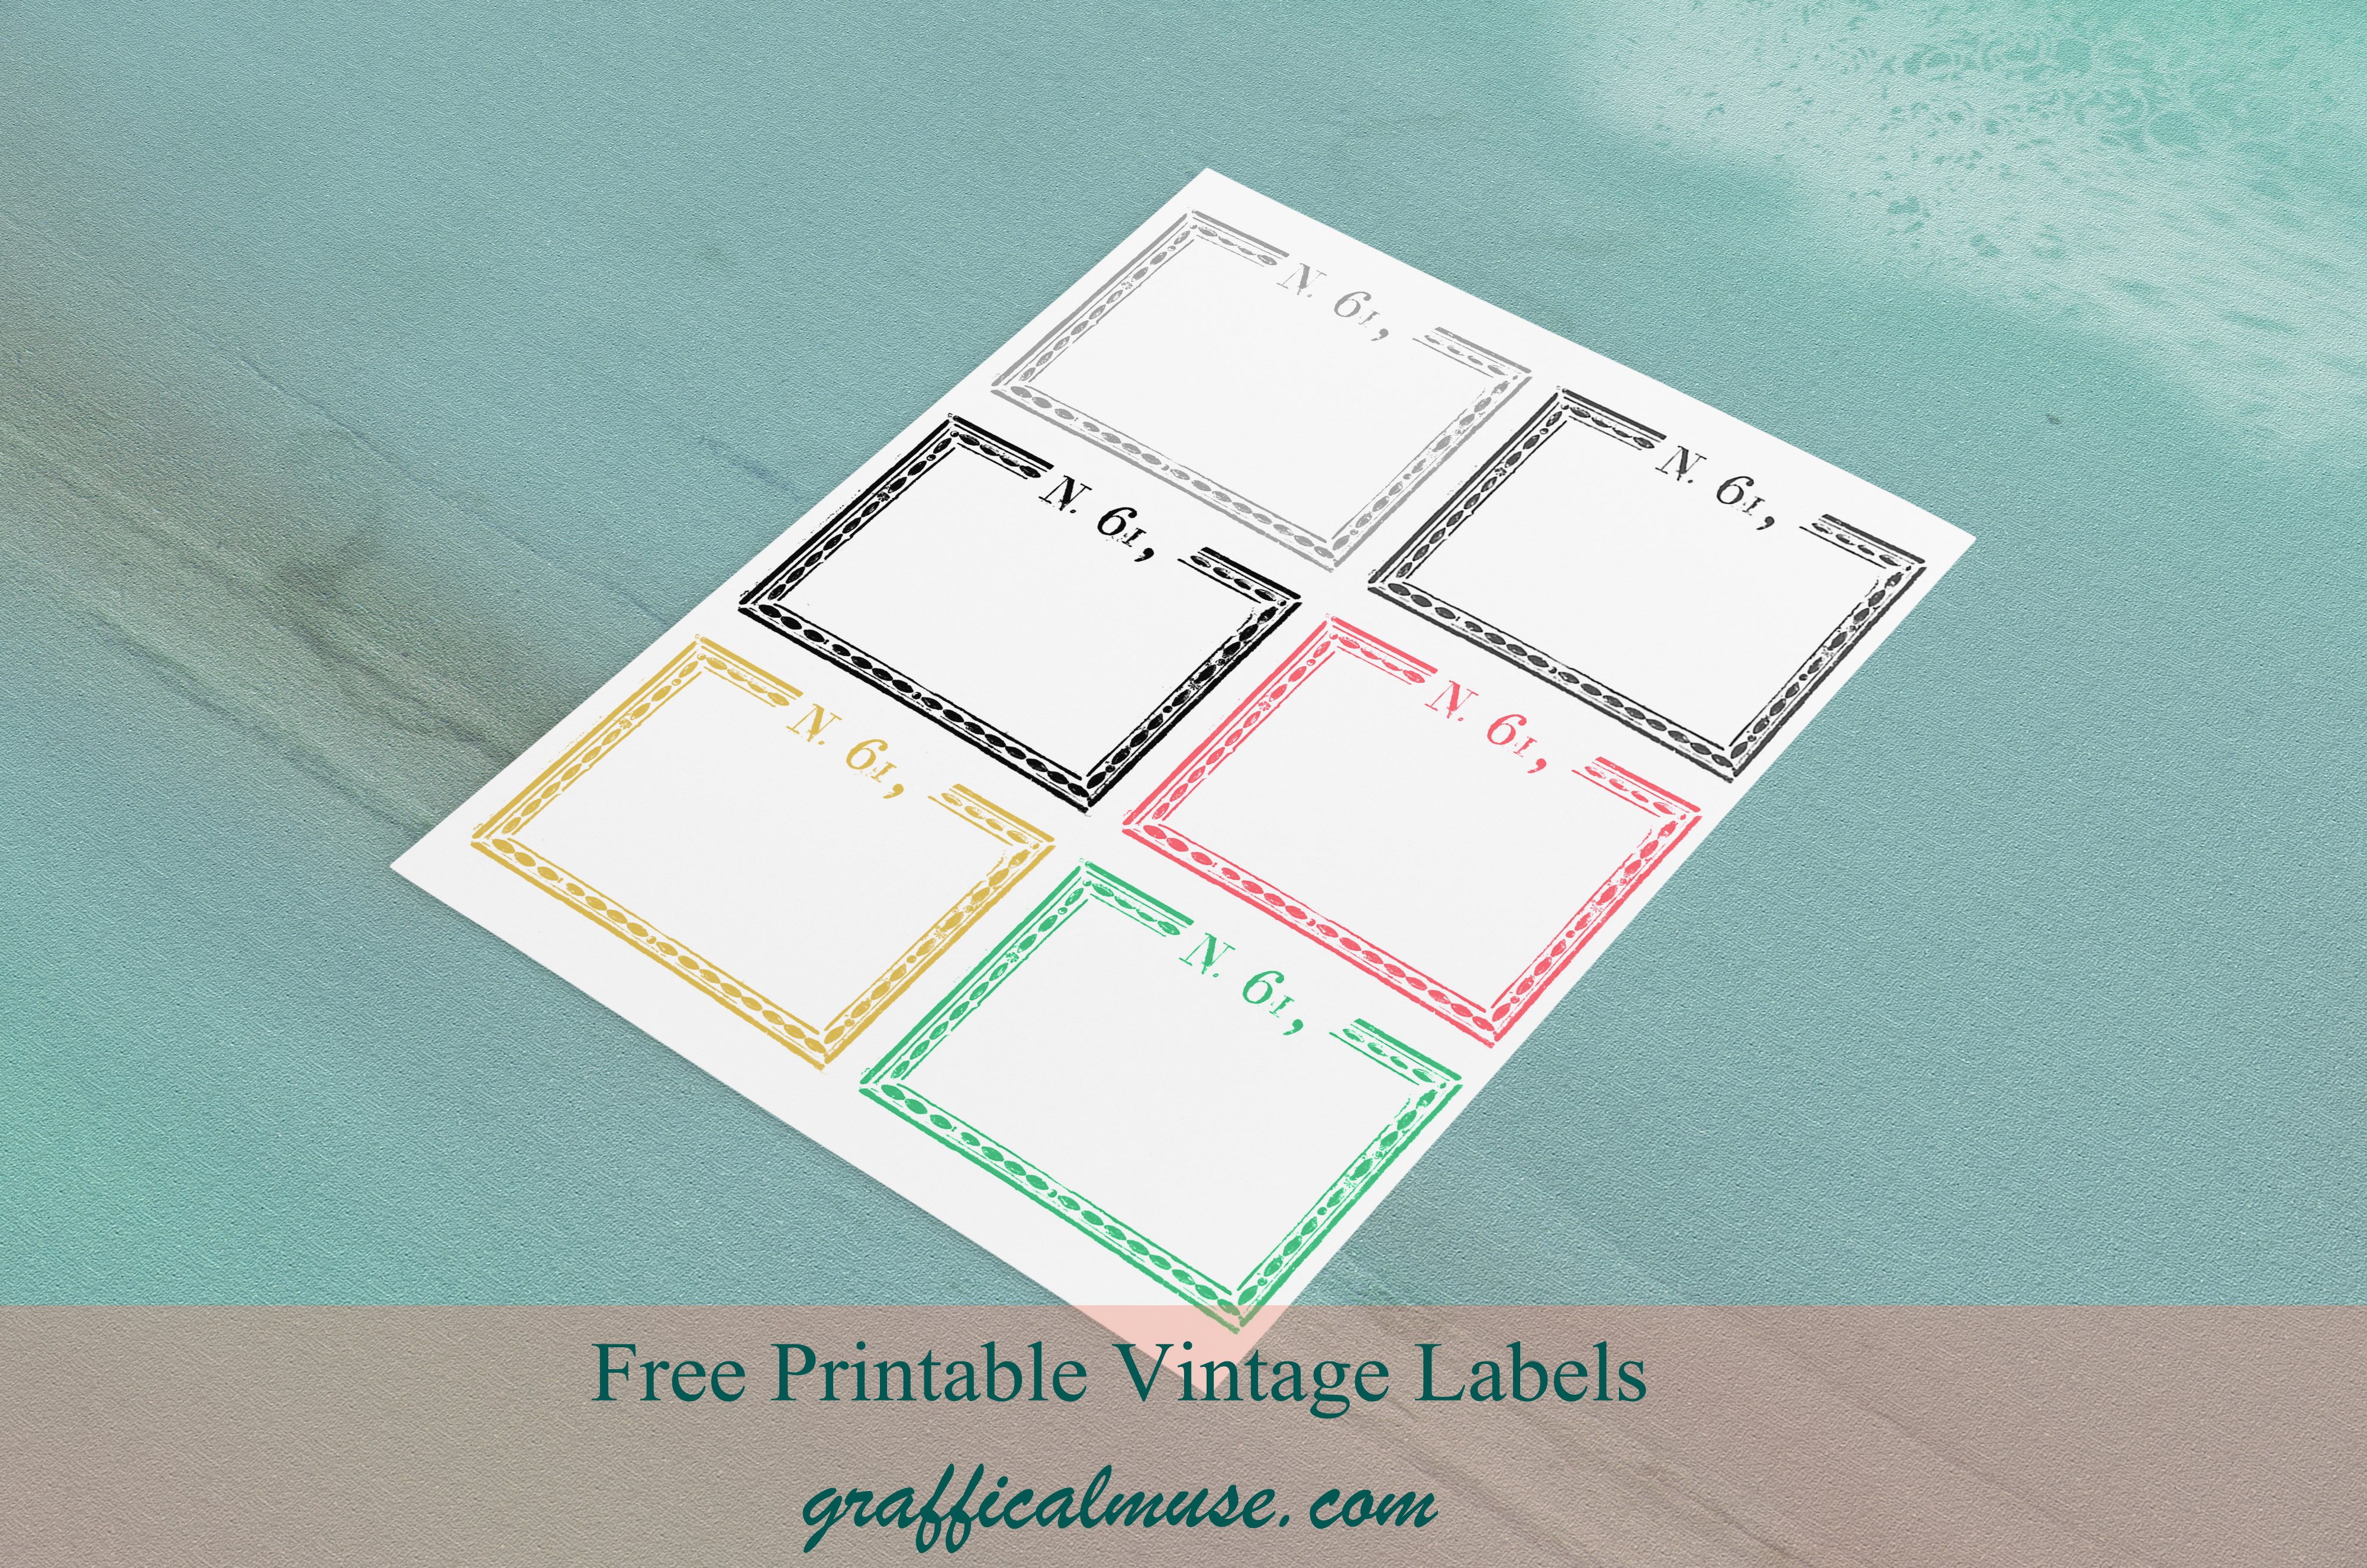 Free Printable Vintage Labels